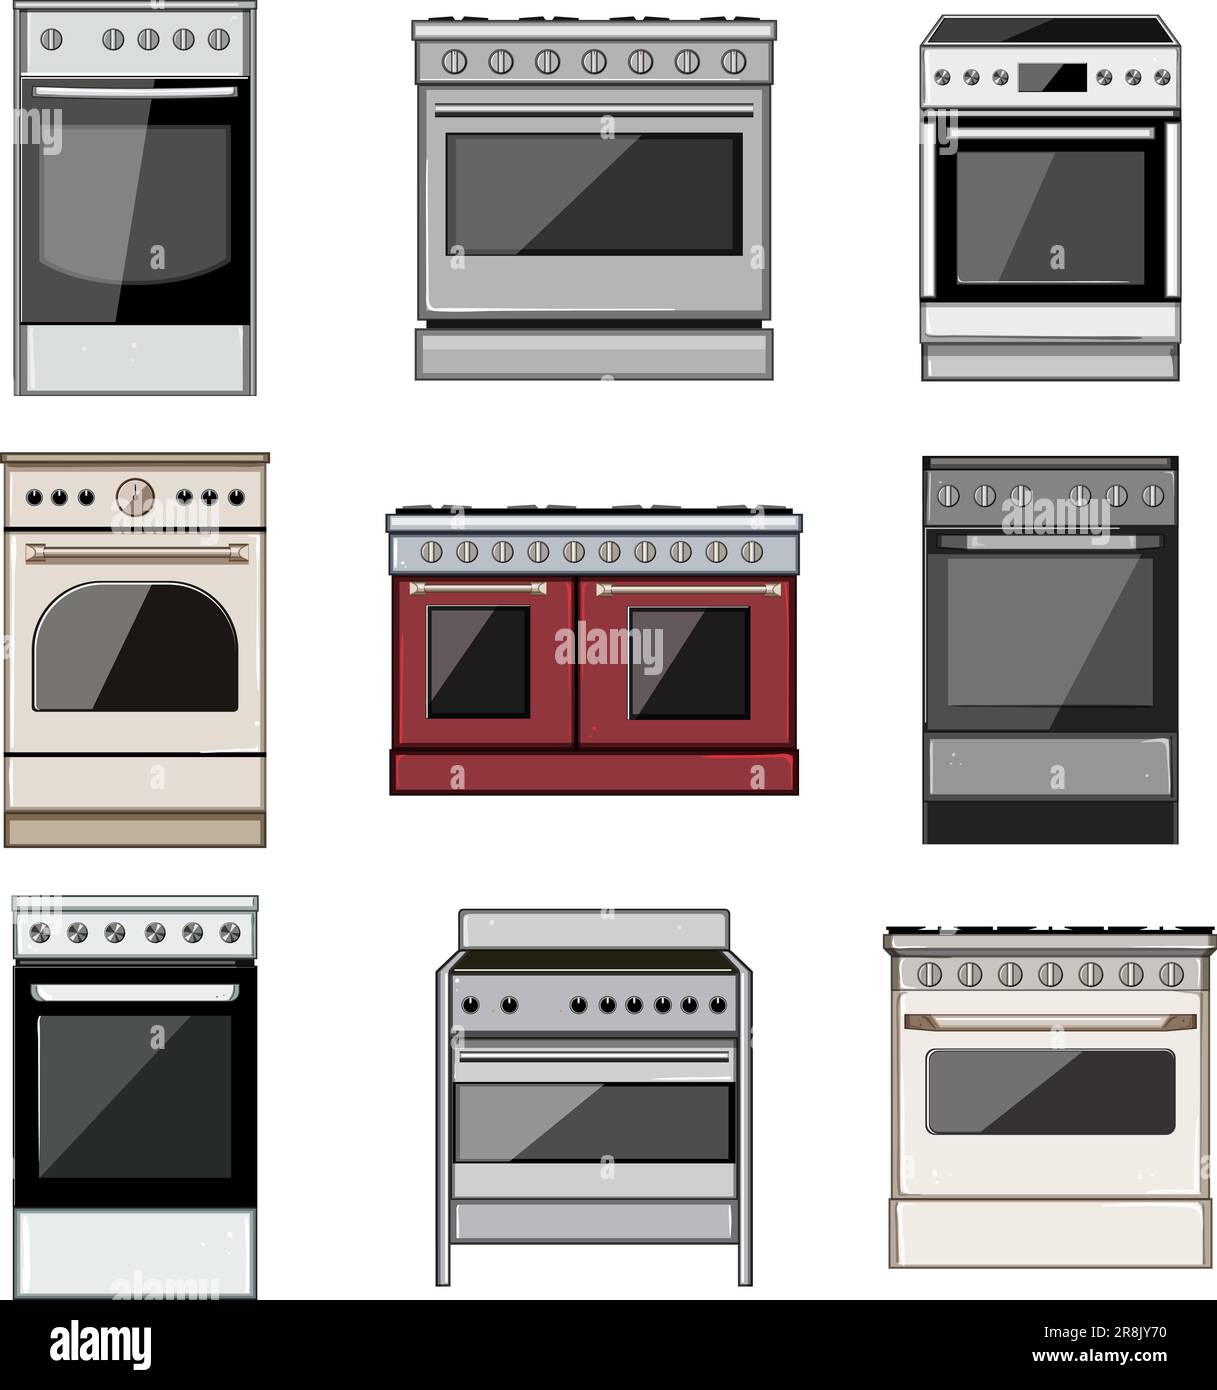 kitchen stove set cartoon vector illustration Stock Vector